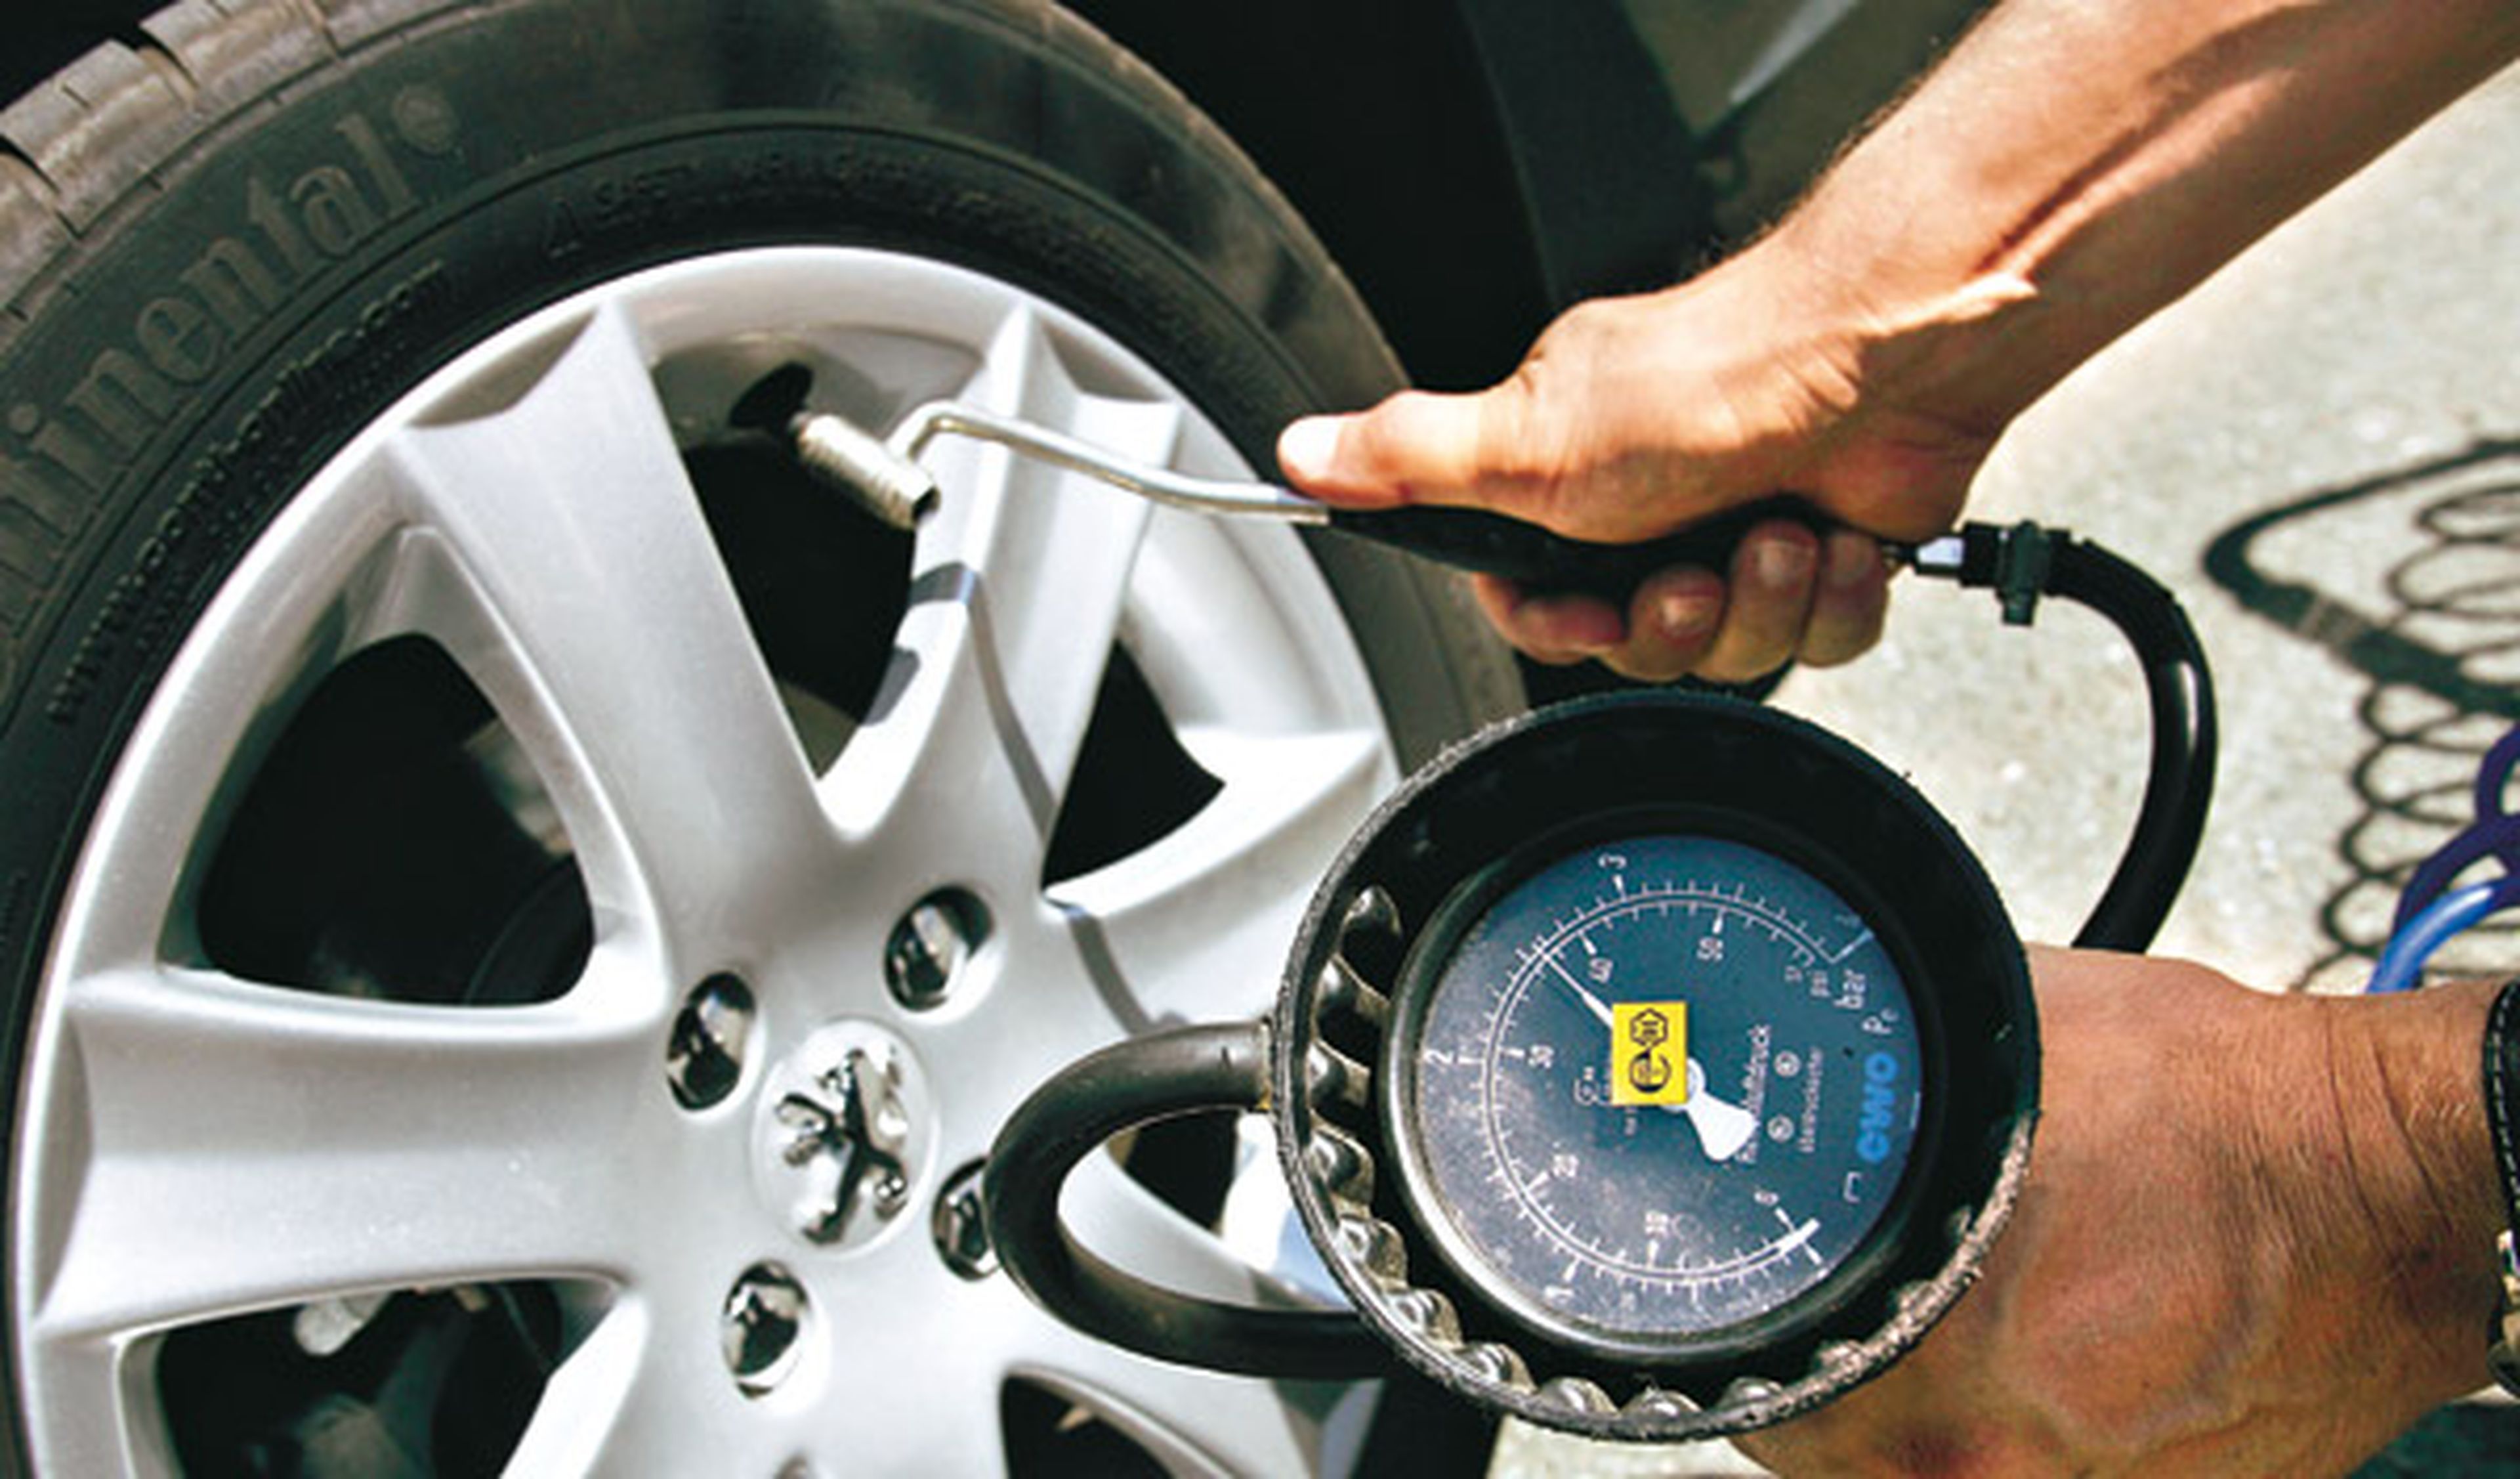 Montaje y equilibrado de las ruedas para el mantenimiento de los neumáticos